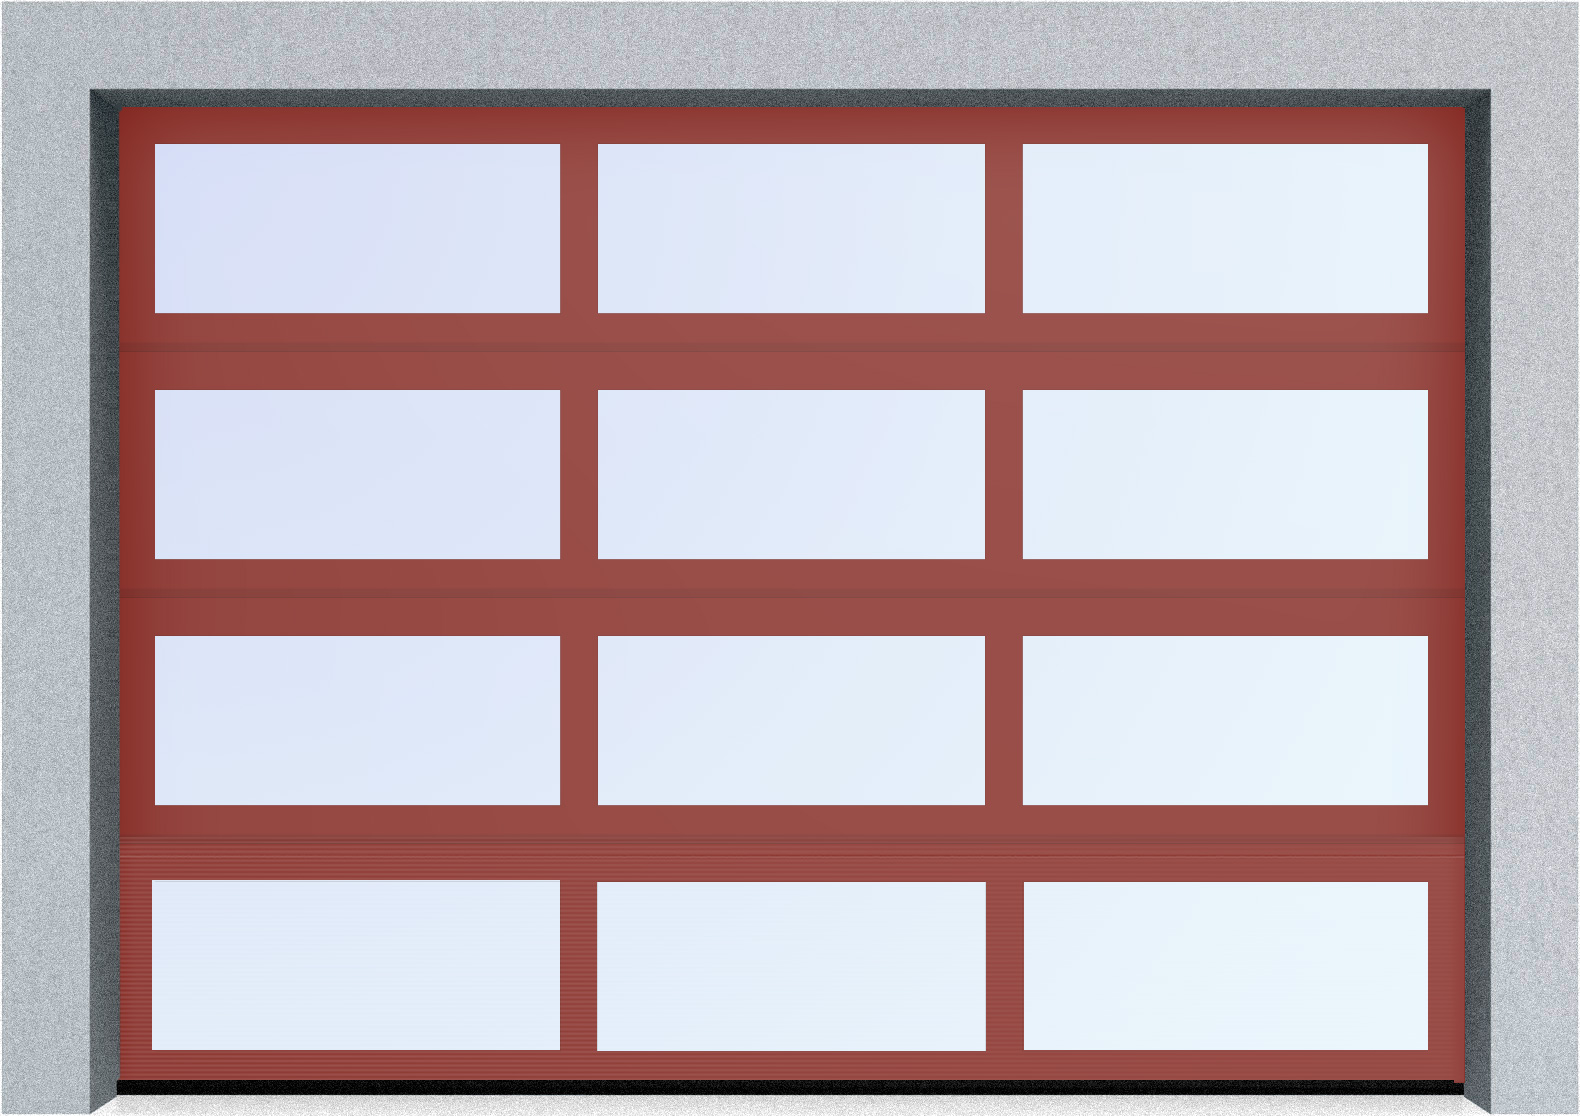  Секционные панорамные ворота серии AluTrend (АЛП) 2250х2375 нижняя панель стандартные цвета, фото 2 